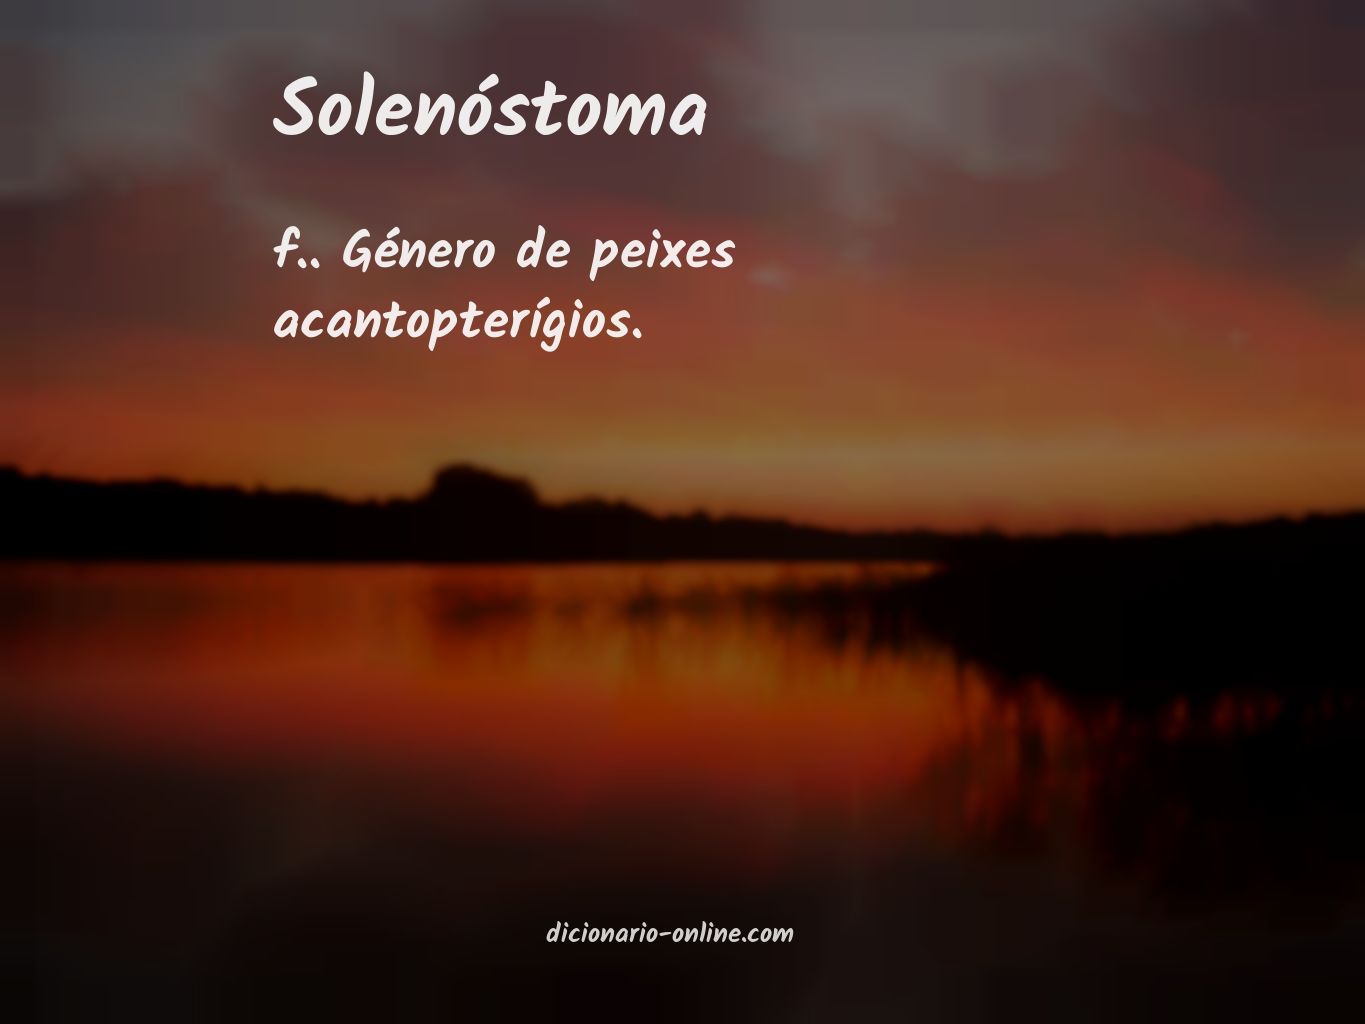 Significado de solenóstoma